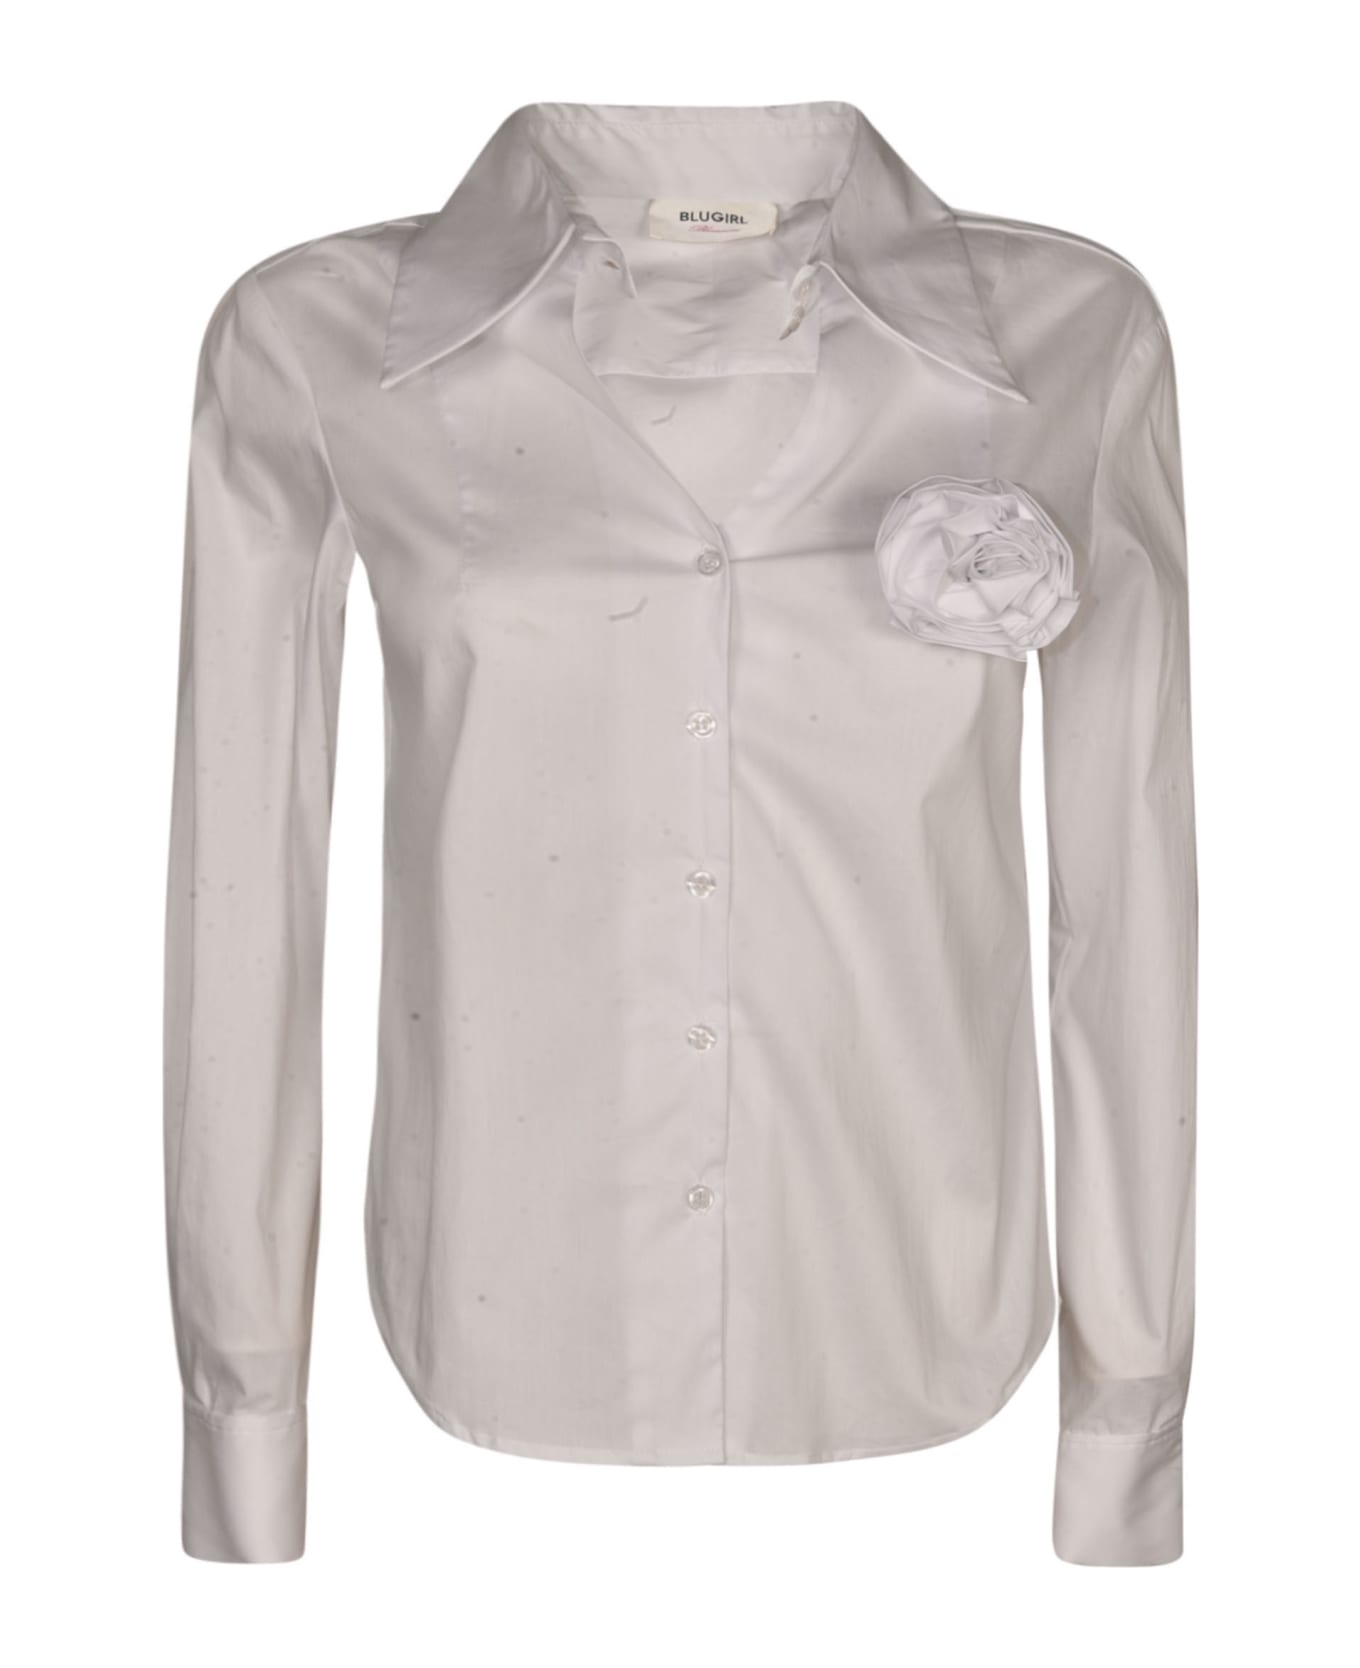 Blugirl Rose Applique Round Hem Shirt - White シャツ